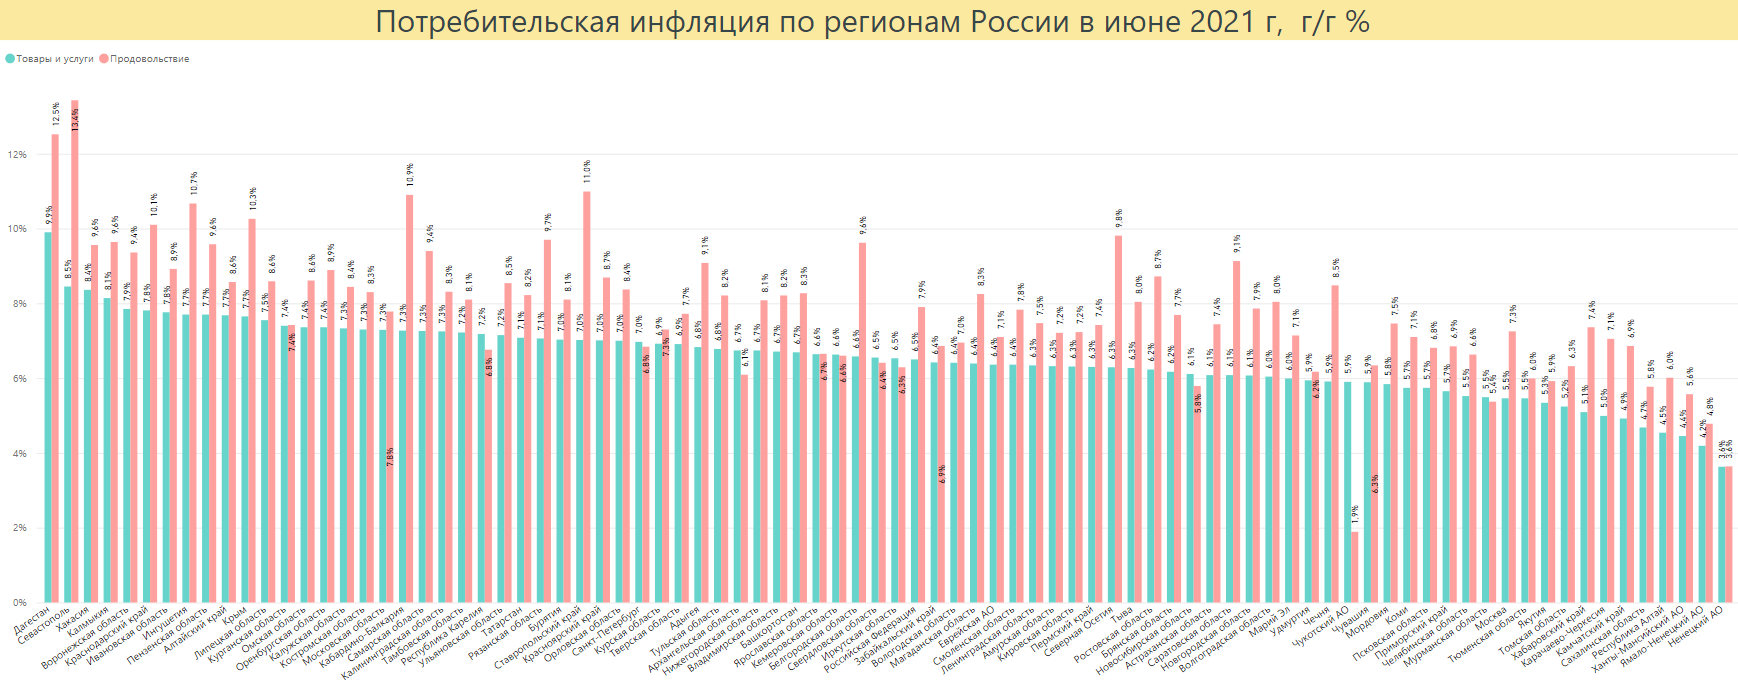 Потребительская инфляция в России в 2021 г. Источник: расчет автора по данным Росстата.